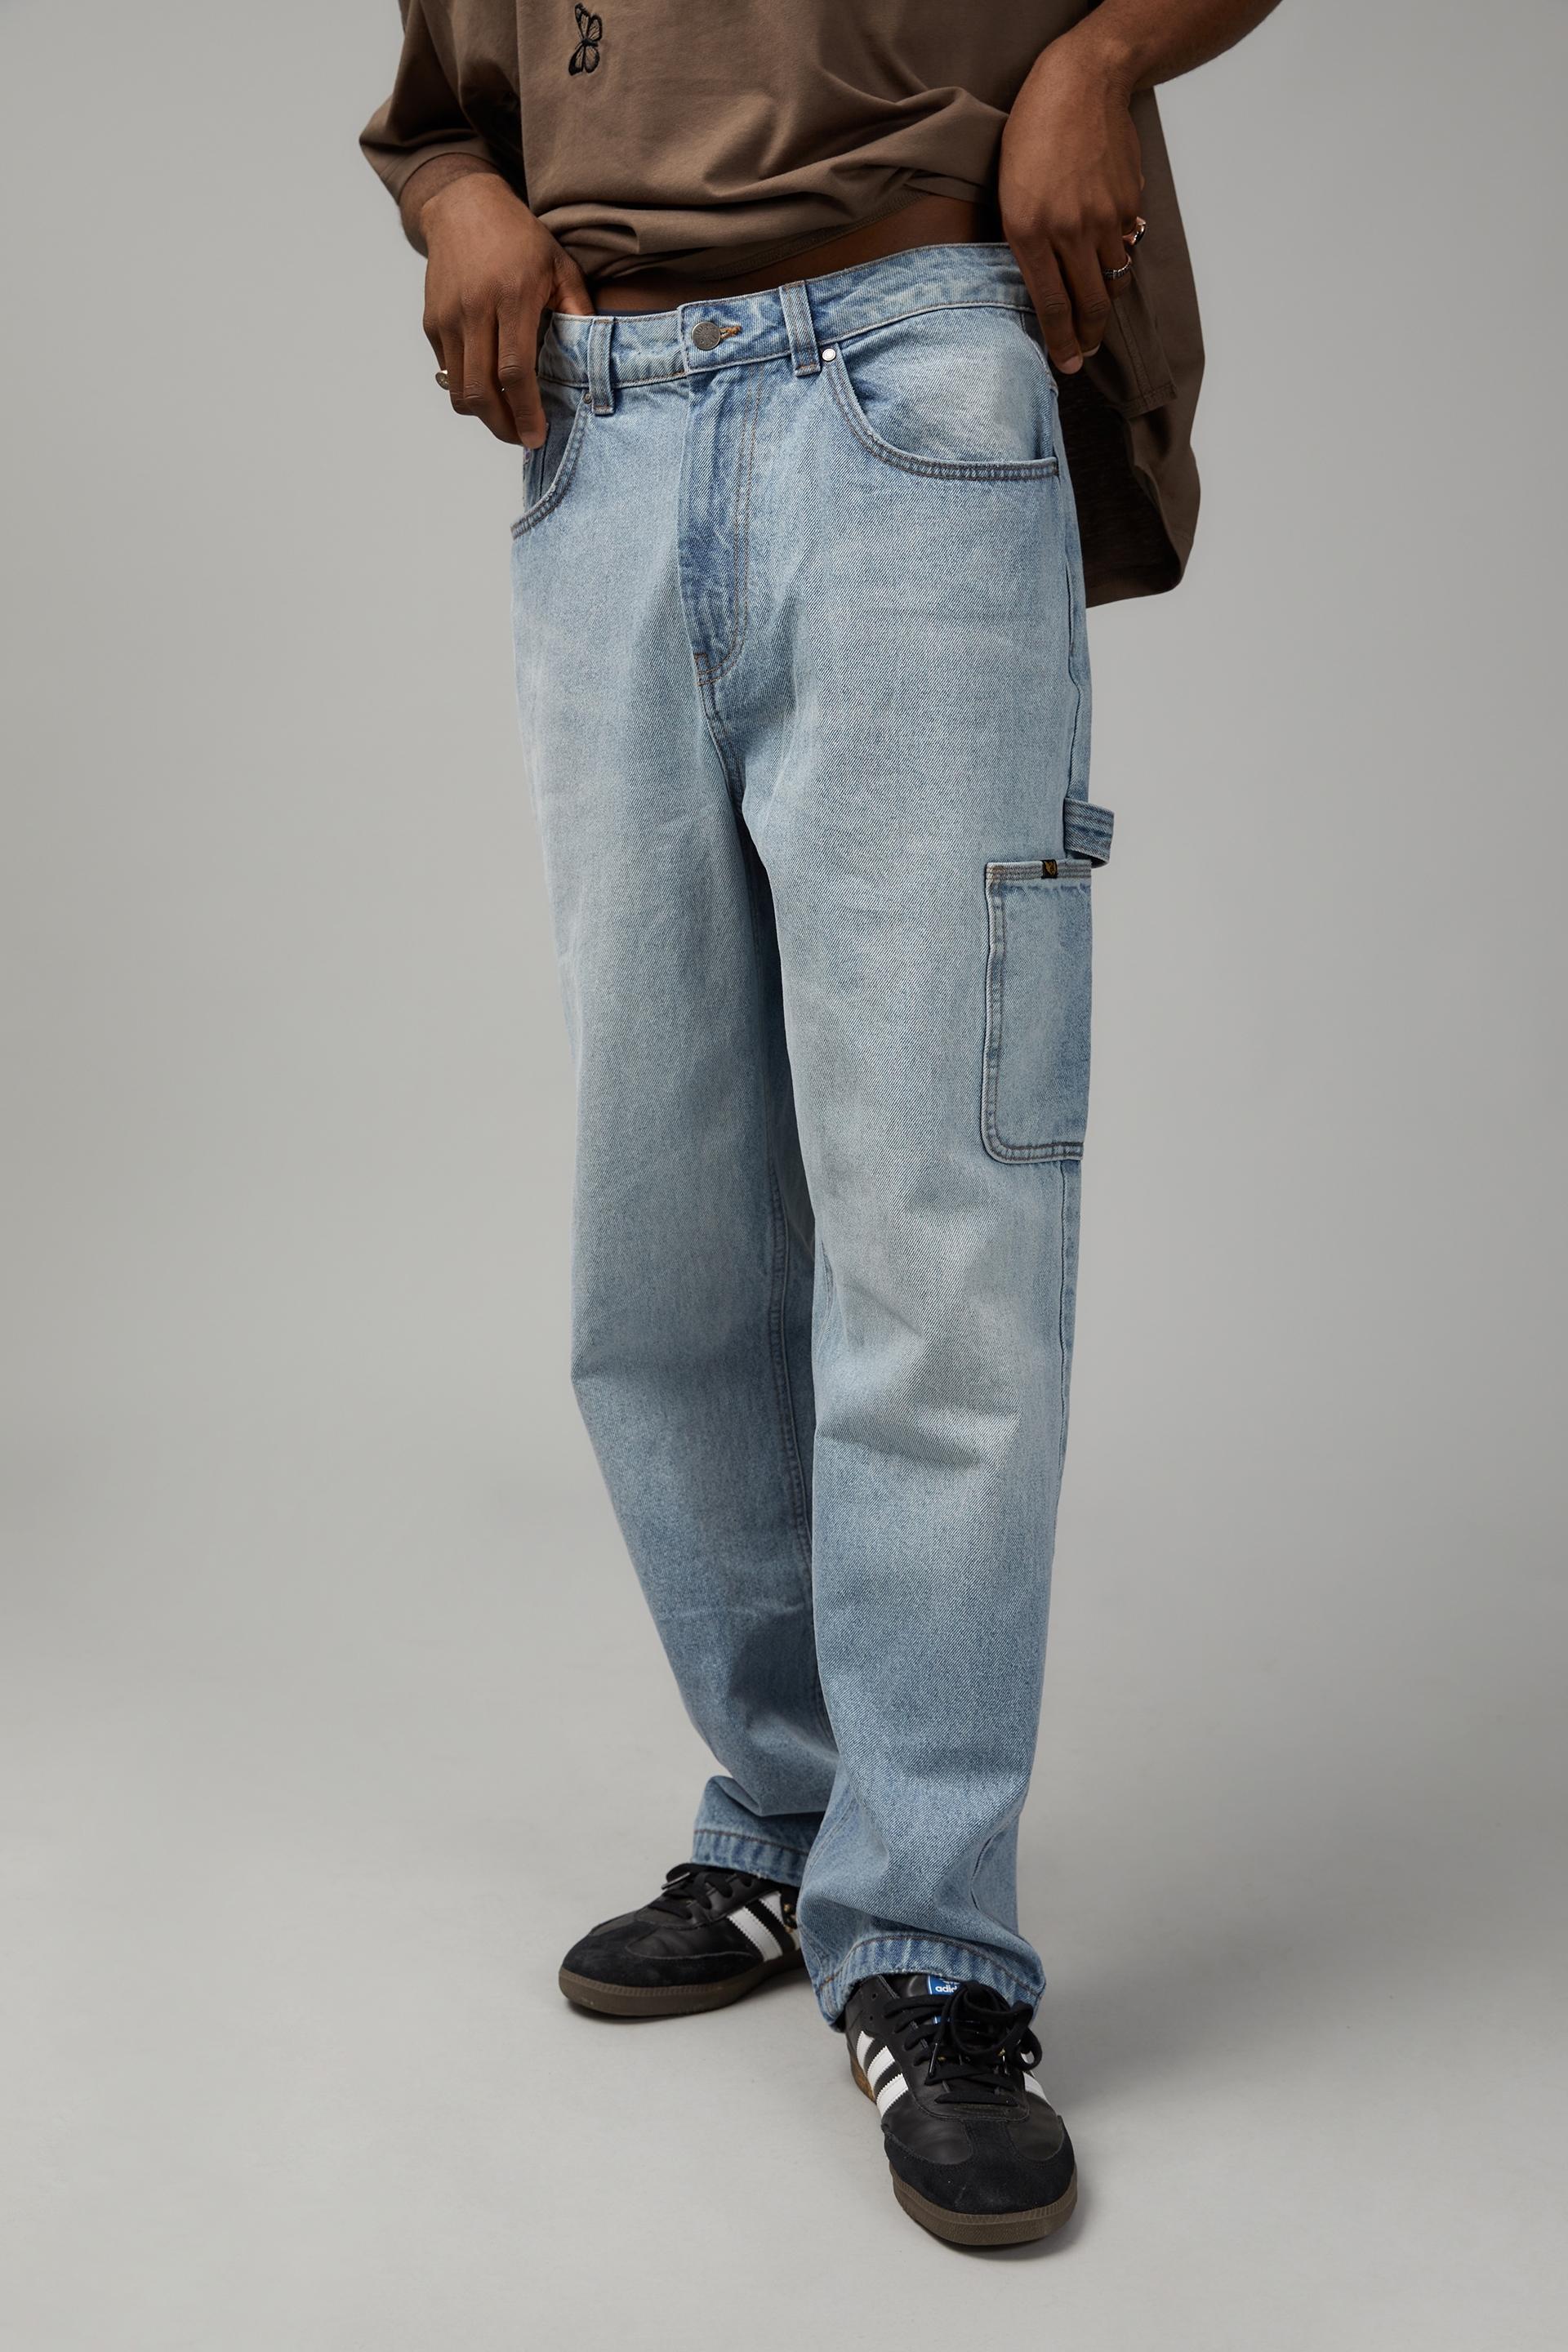 Baggy painter jean - worn out bleach Factorie Jeans | Superbalist.com